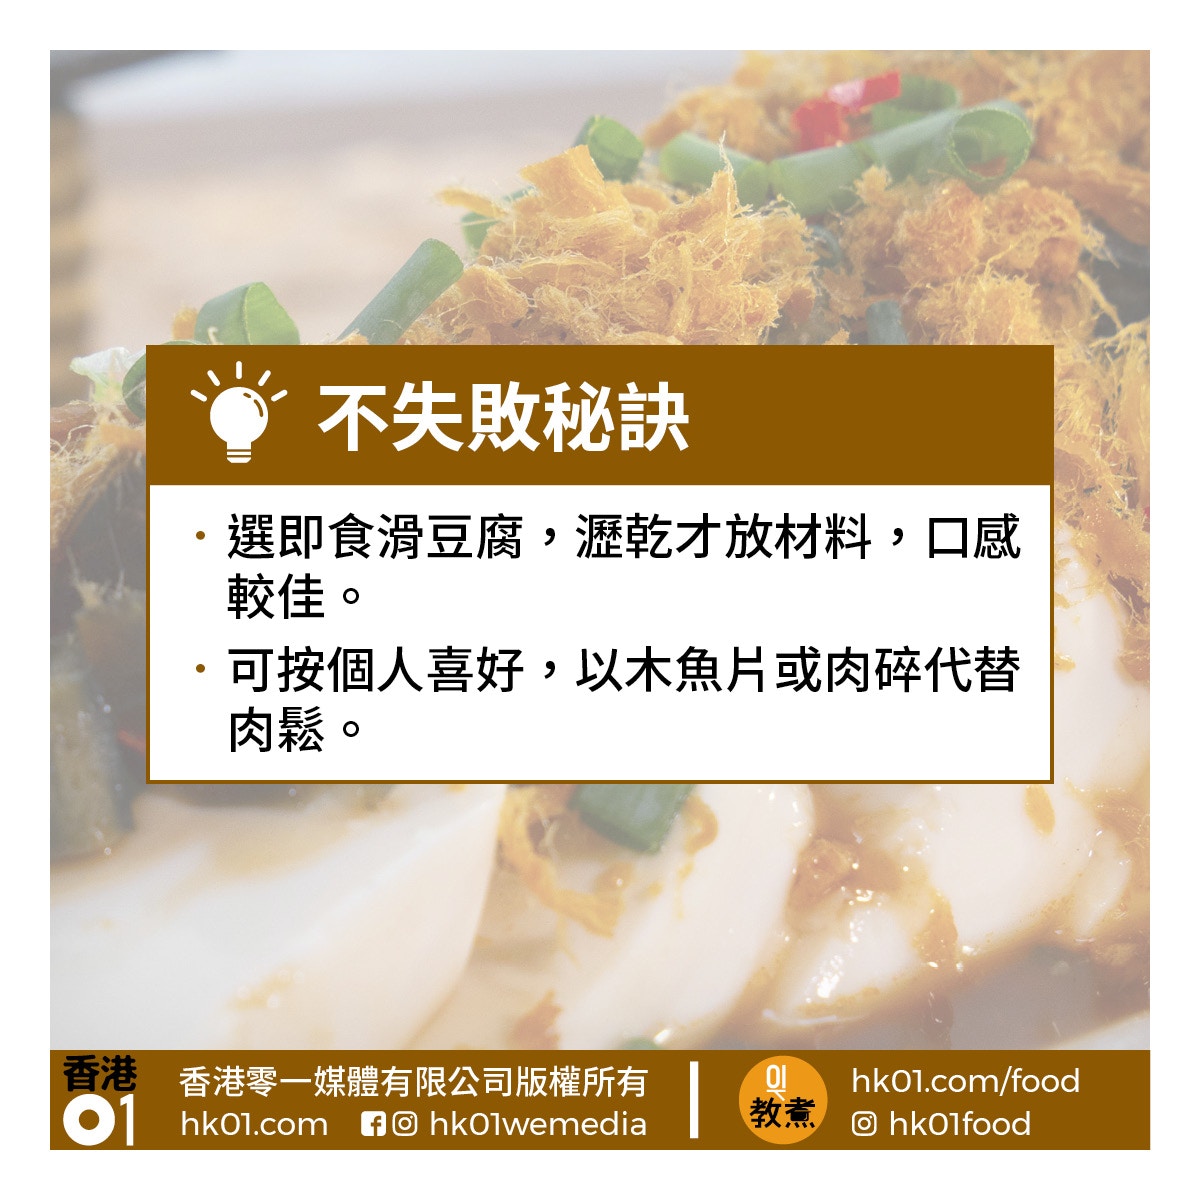 豆腐食譜合集 五花八門吃豆腐前菜小食家常菜甜品湯水合集 香港01 教煮